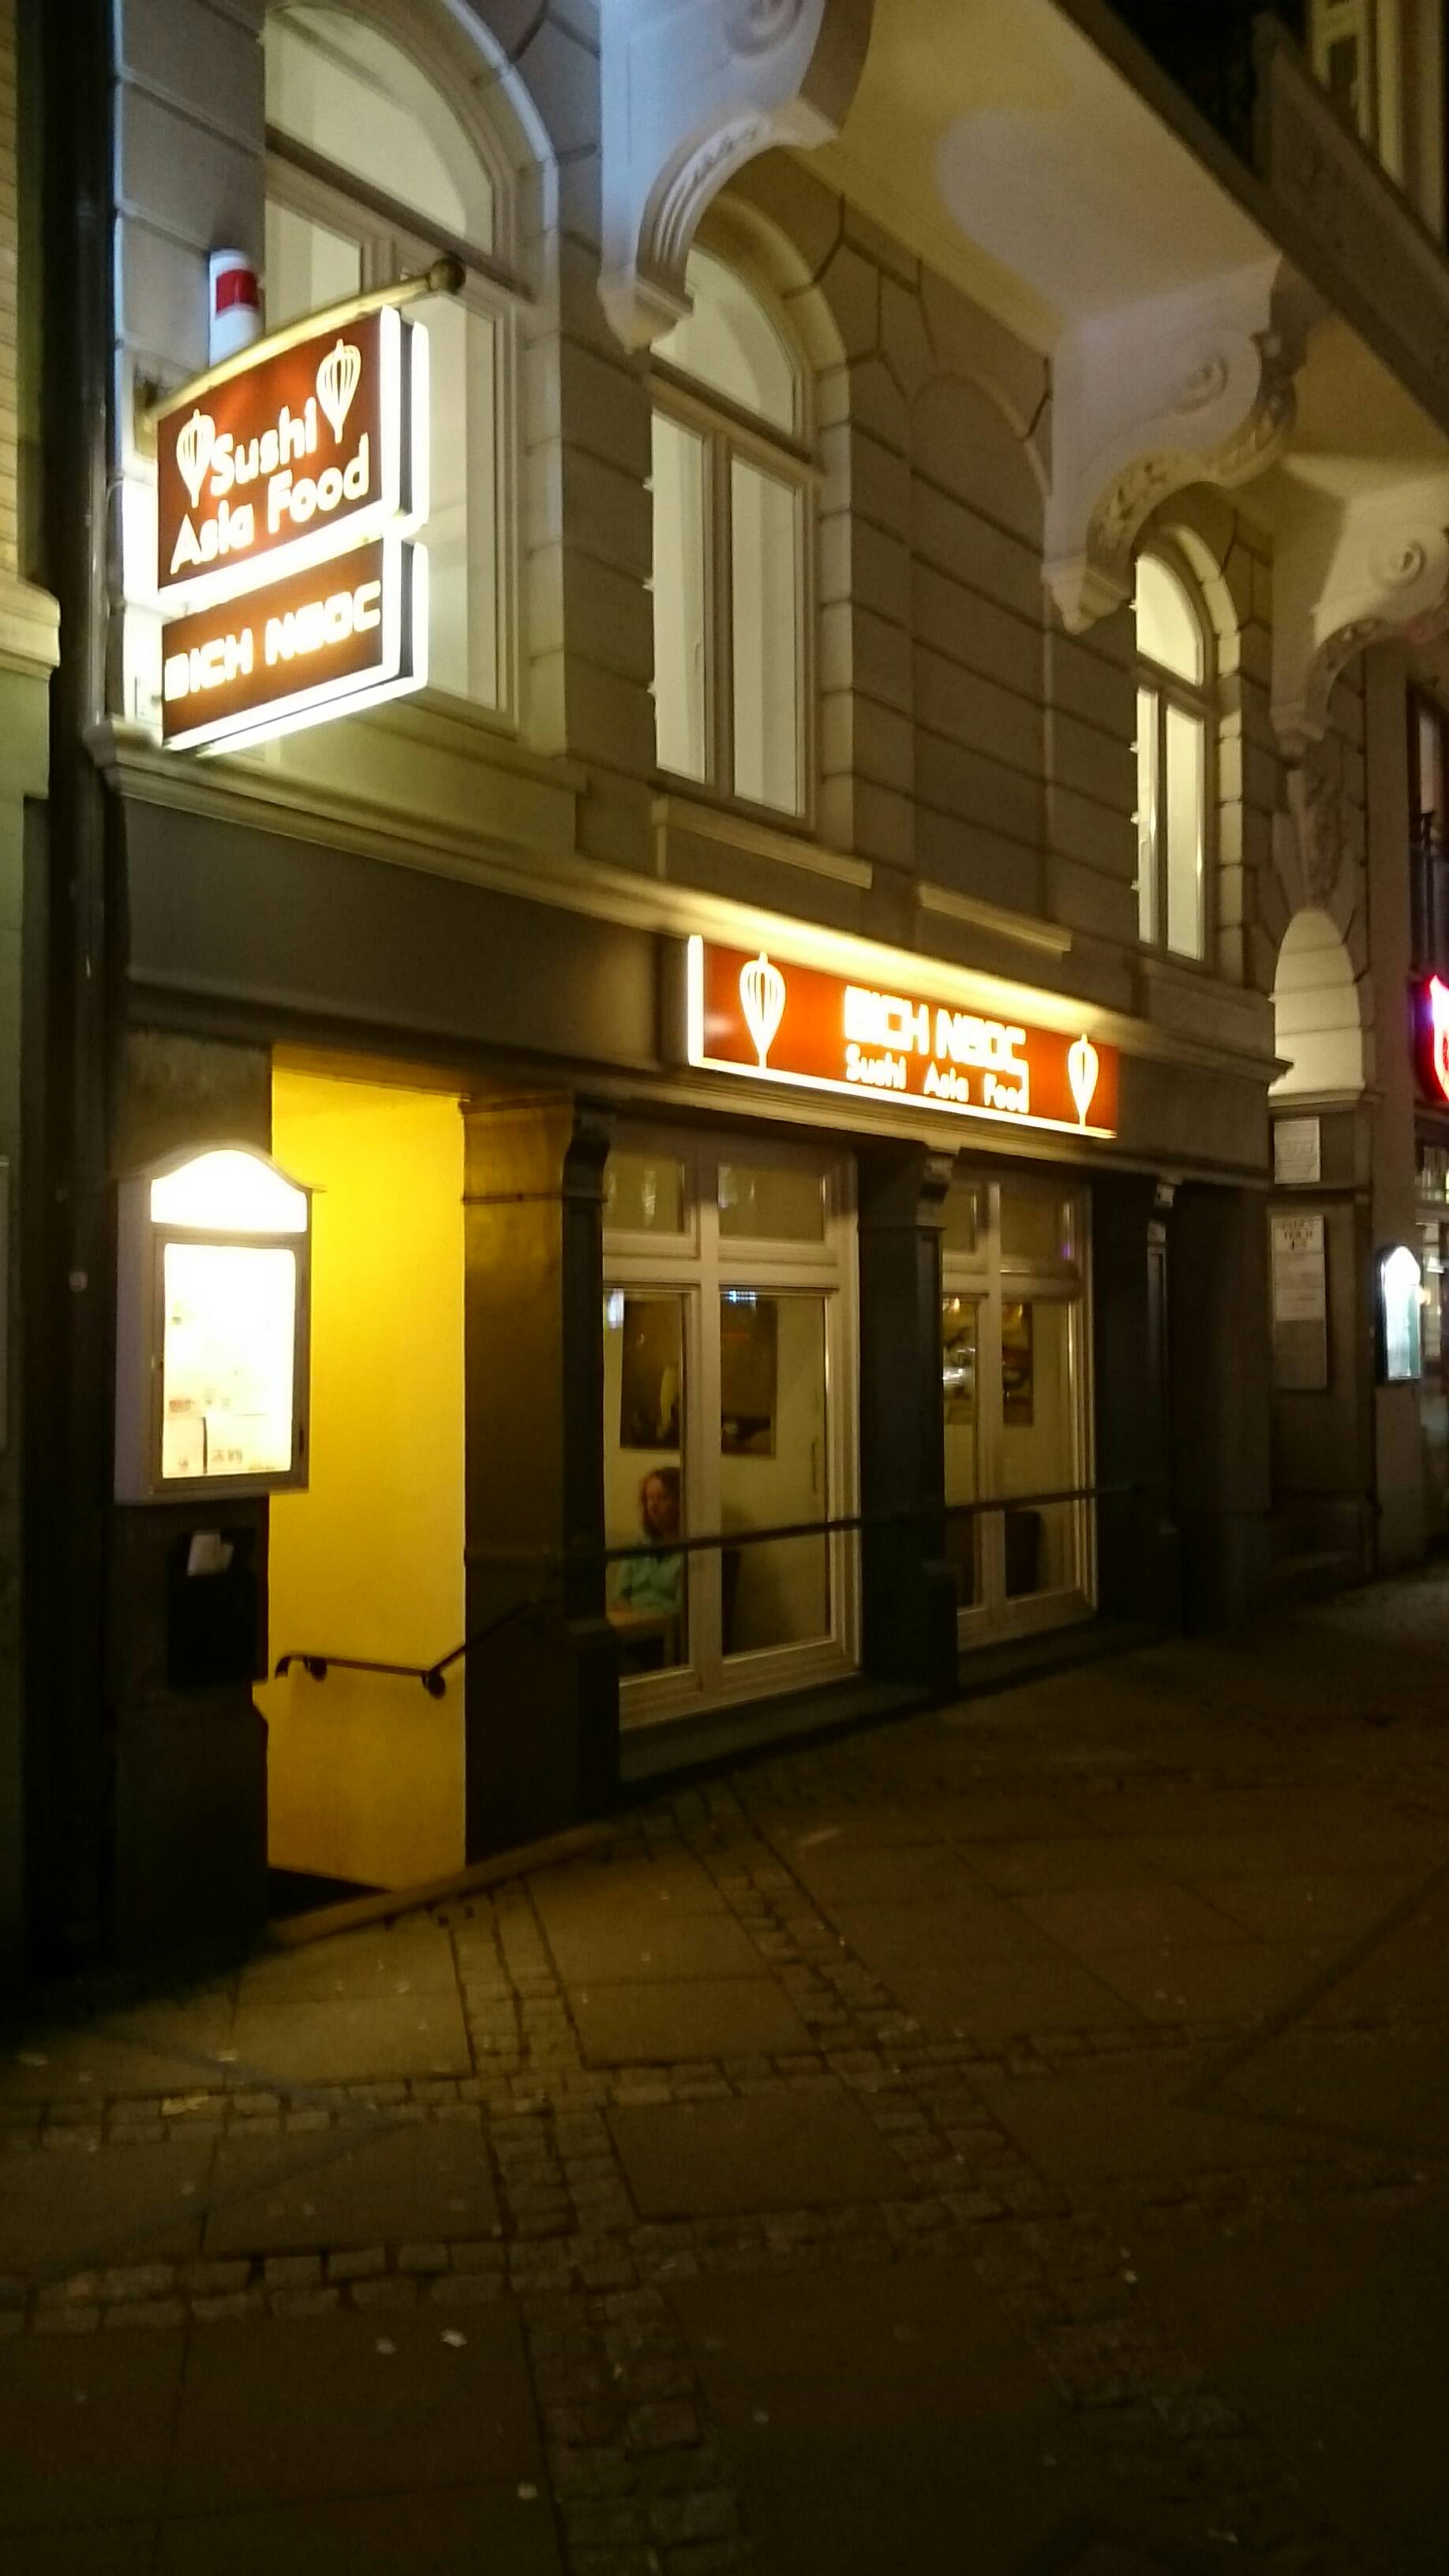 Bild 1 Sushi-Asia-Food Bich Ngoc in Hamburg